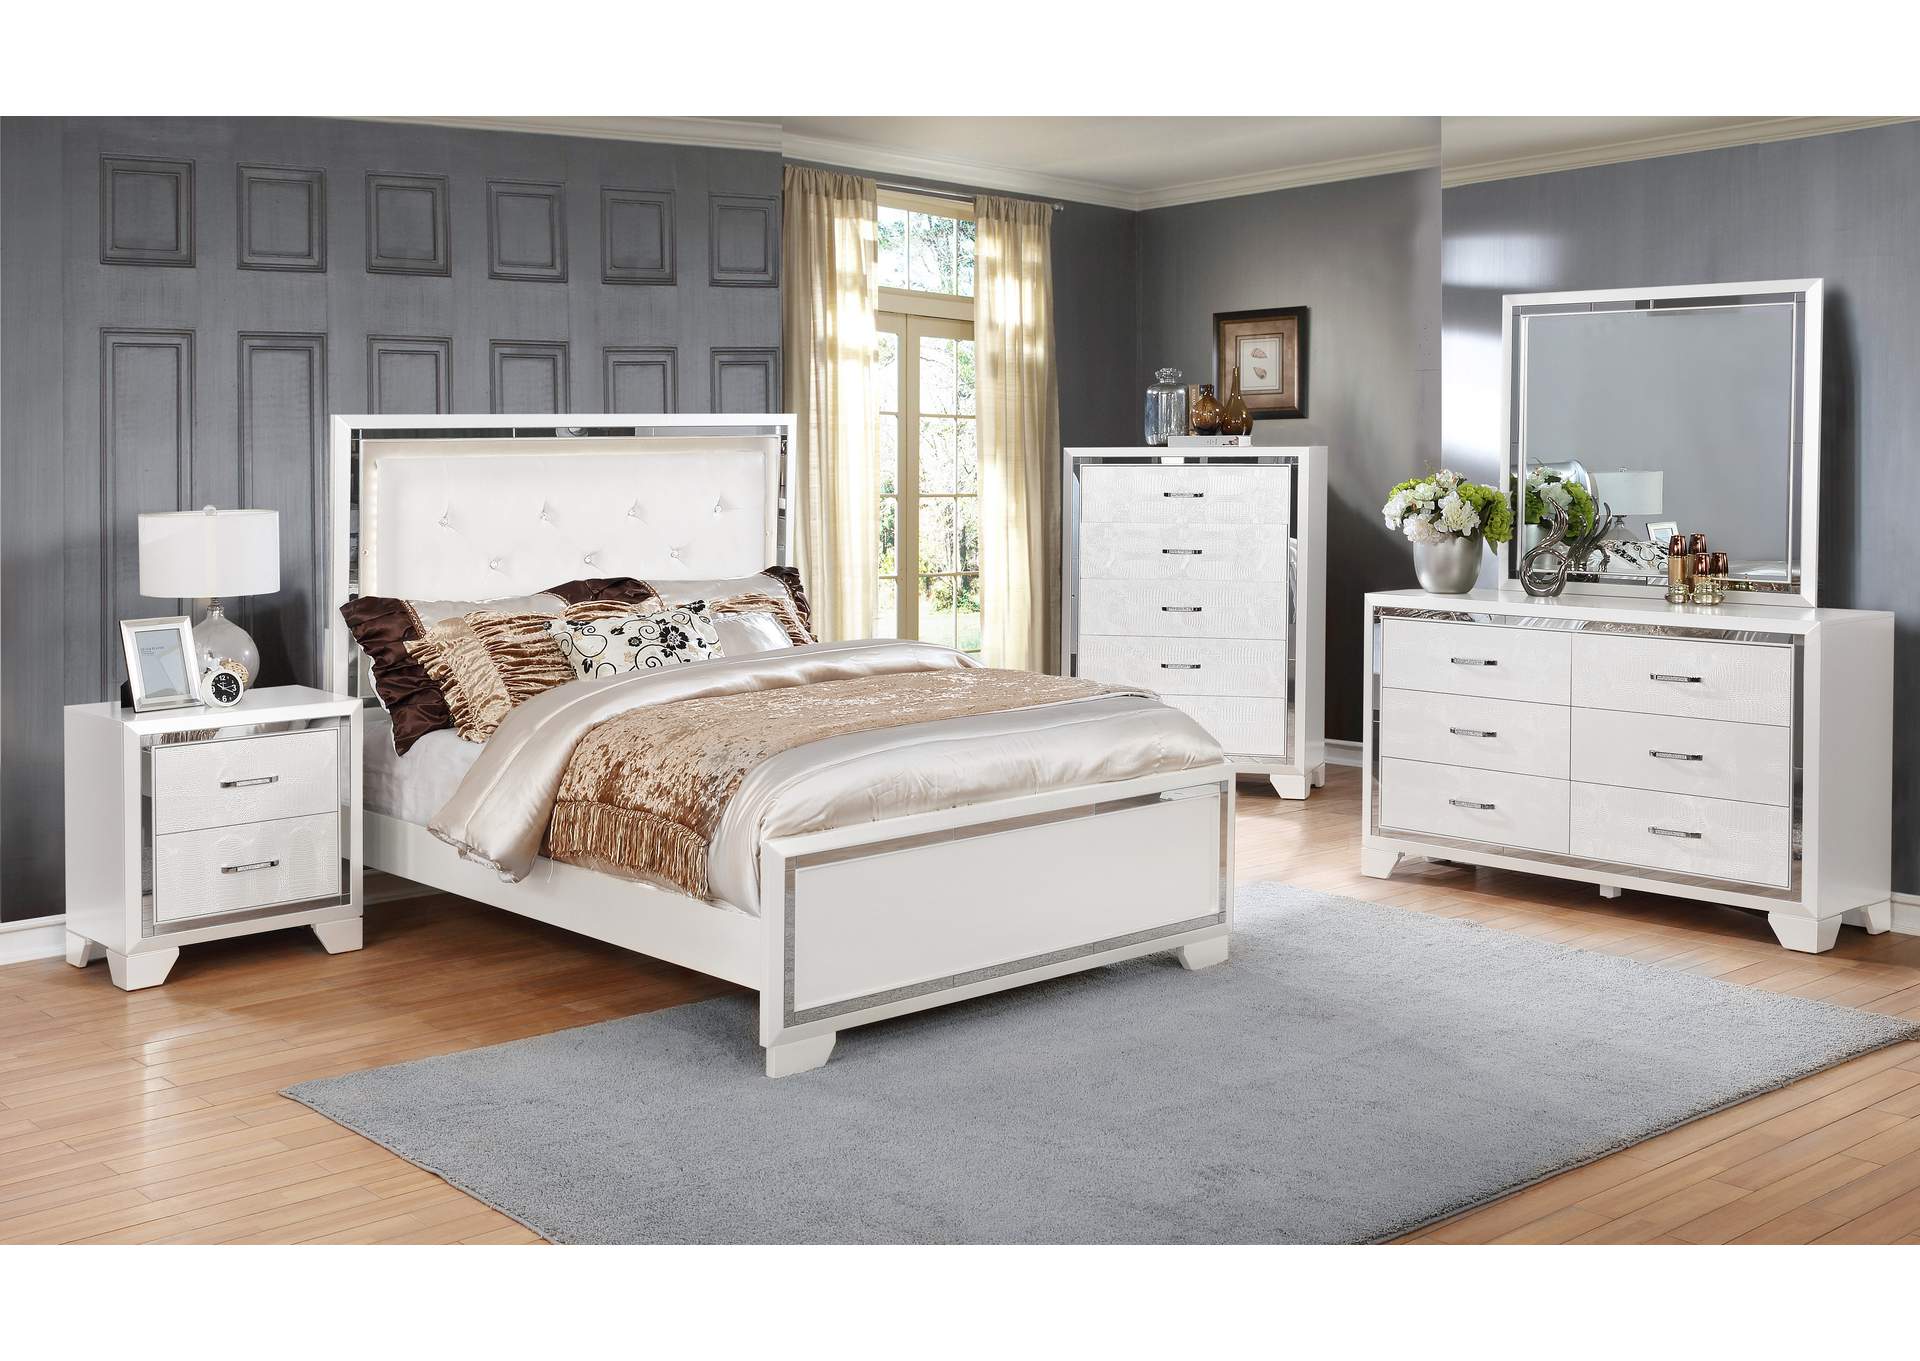 4 Piece Queen Bedroom Set W/ Nightstand, Dresser & Mirror,Global Trading